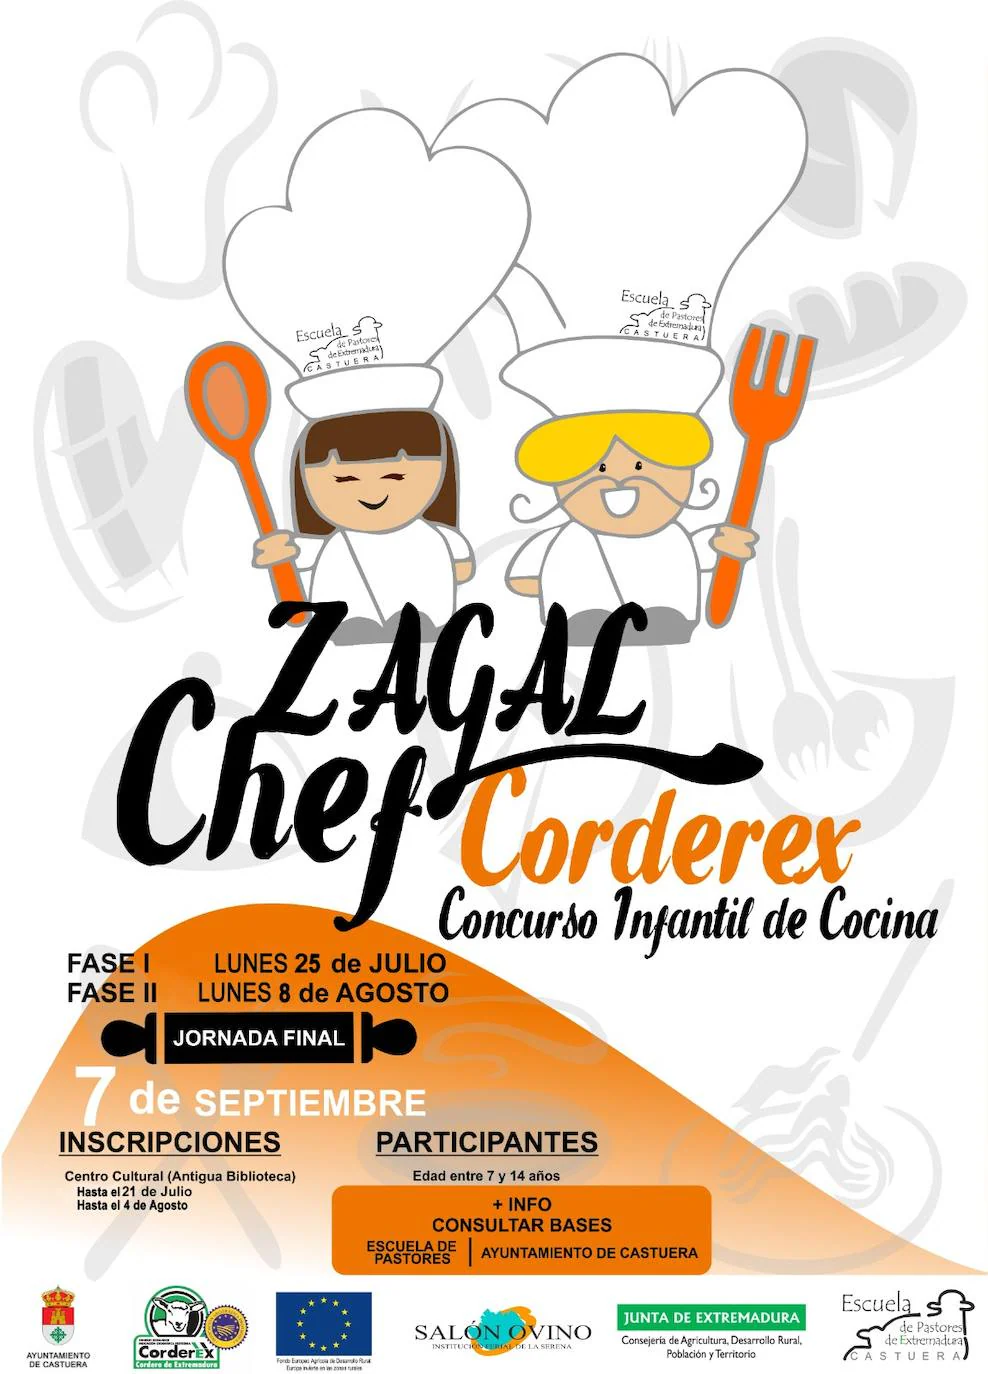 El concurso infantil de cocina 'Zagal Chef Corderex' celebra el lunes 25 de julio su primera ronda